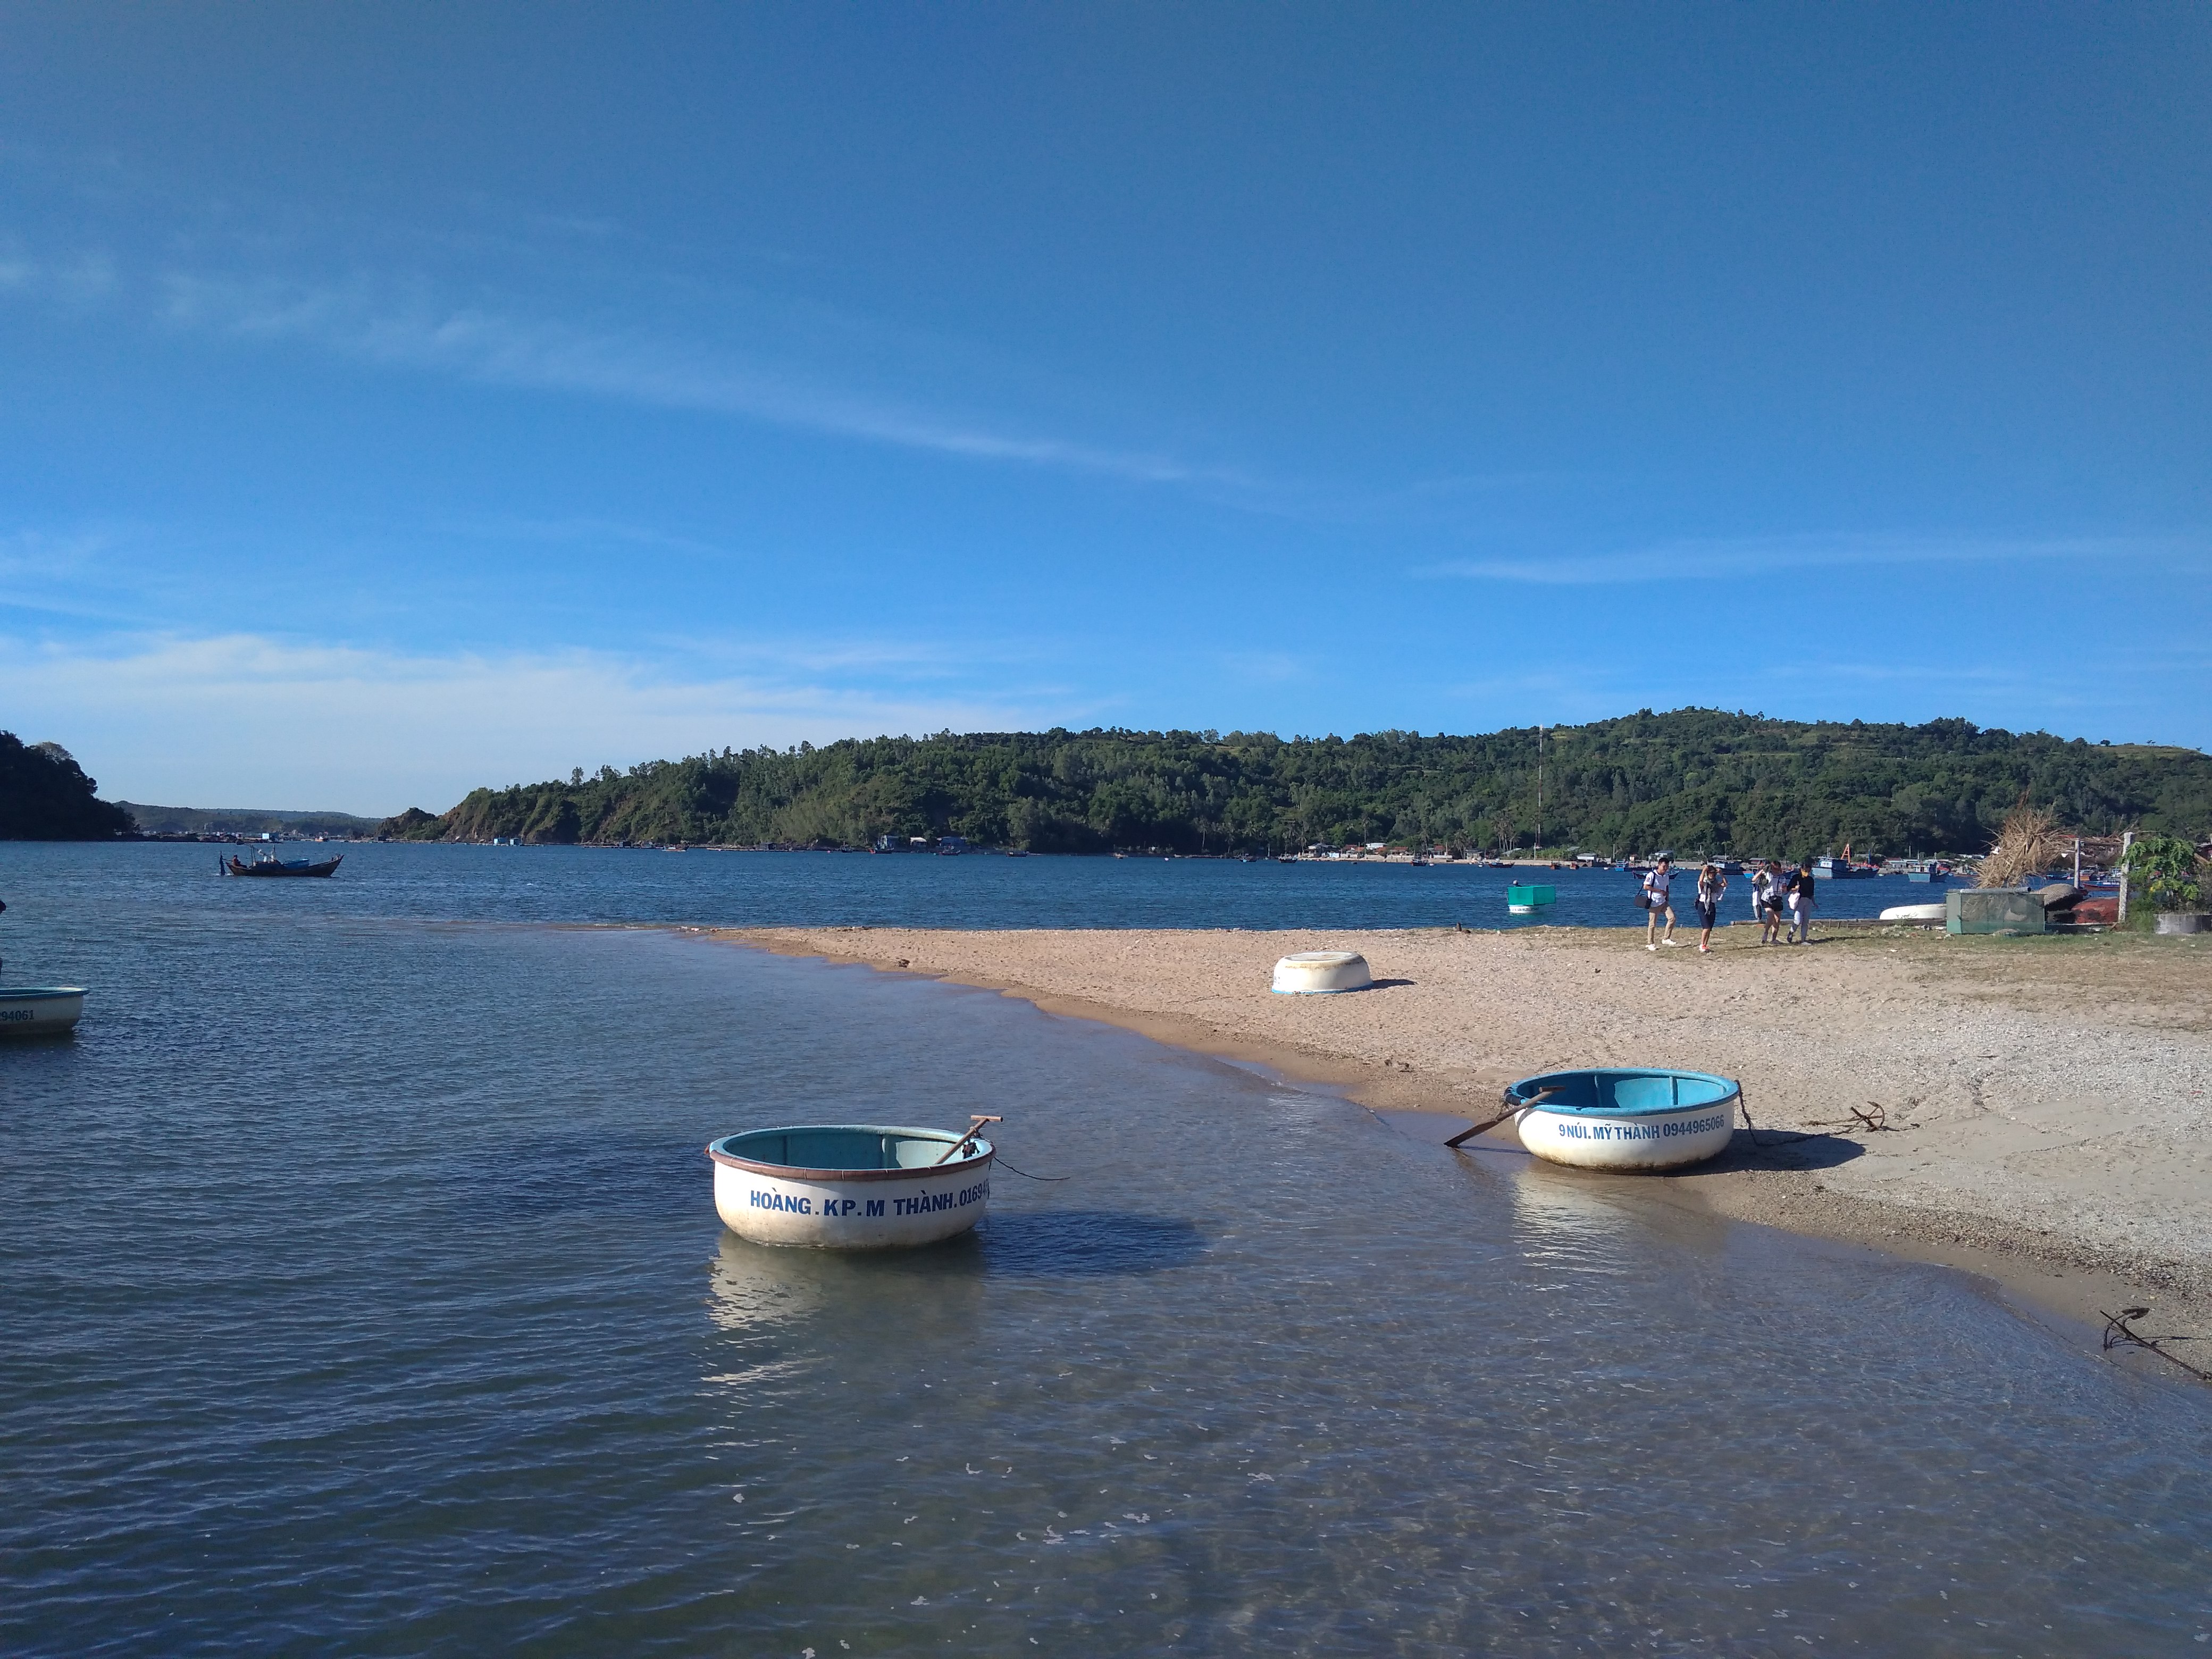 Buổi sáng trên vịnh Xuân Đài, bên bến thuyền chuẩn bị sang đảo Nhất Tự Sơn. Bạn có thể lội nước qua đảo hoặc đi cano